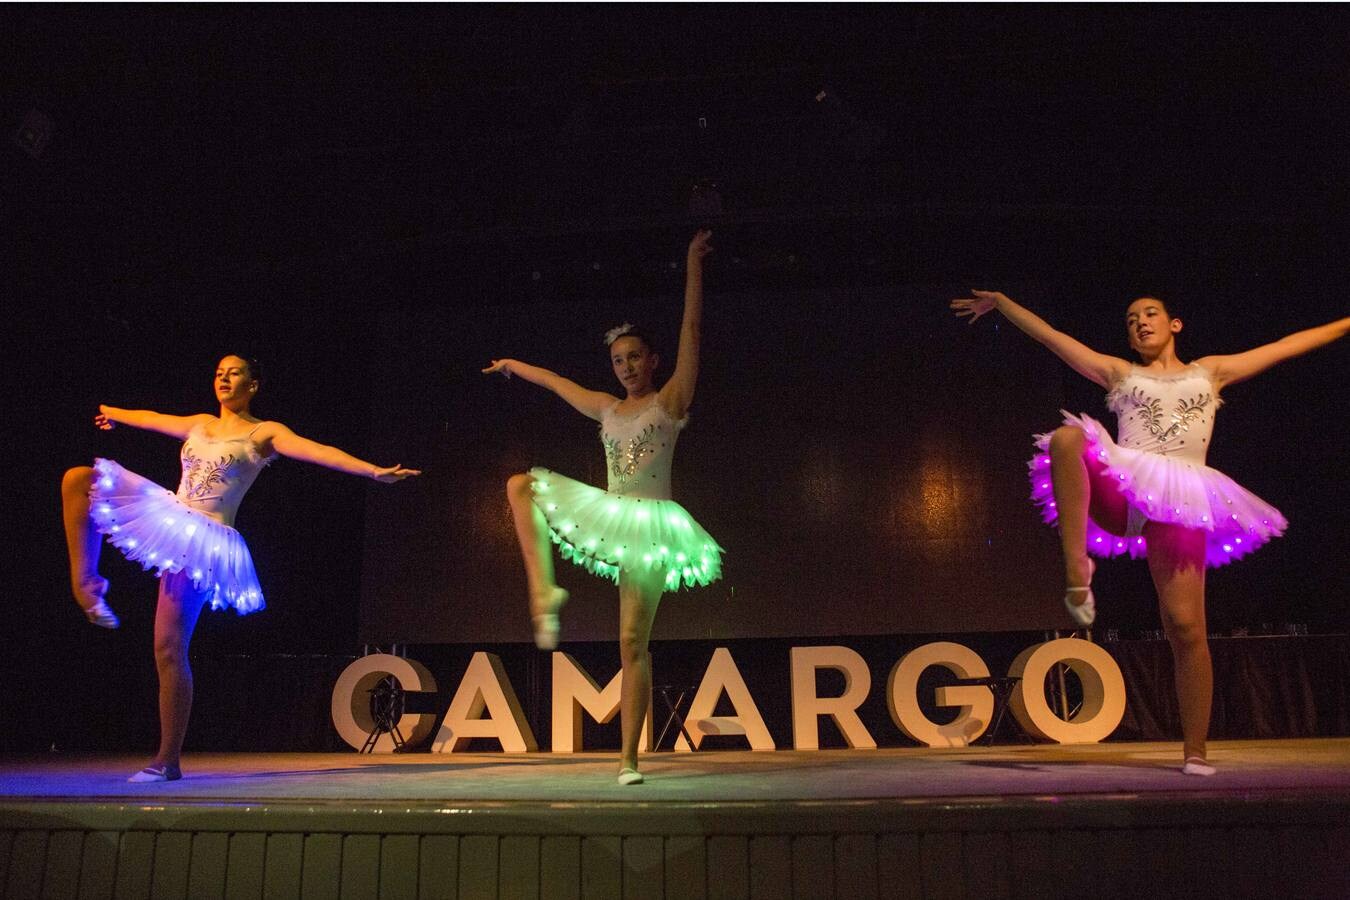 El centro cultural de La Vidriera ha acogido la celebración de la XXVII Fiesta del Deporte de Camargo, un evento que ha tenido lugar anoche para reconocer la labor de los deportistas y los clubes del municipio durante la pasada temporada.